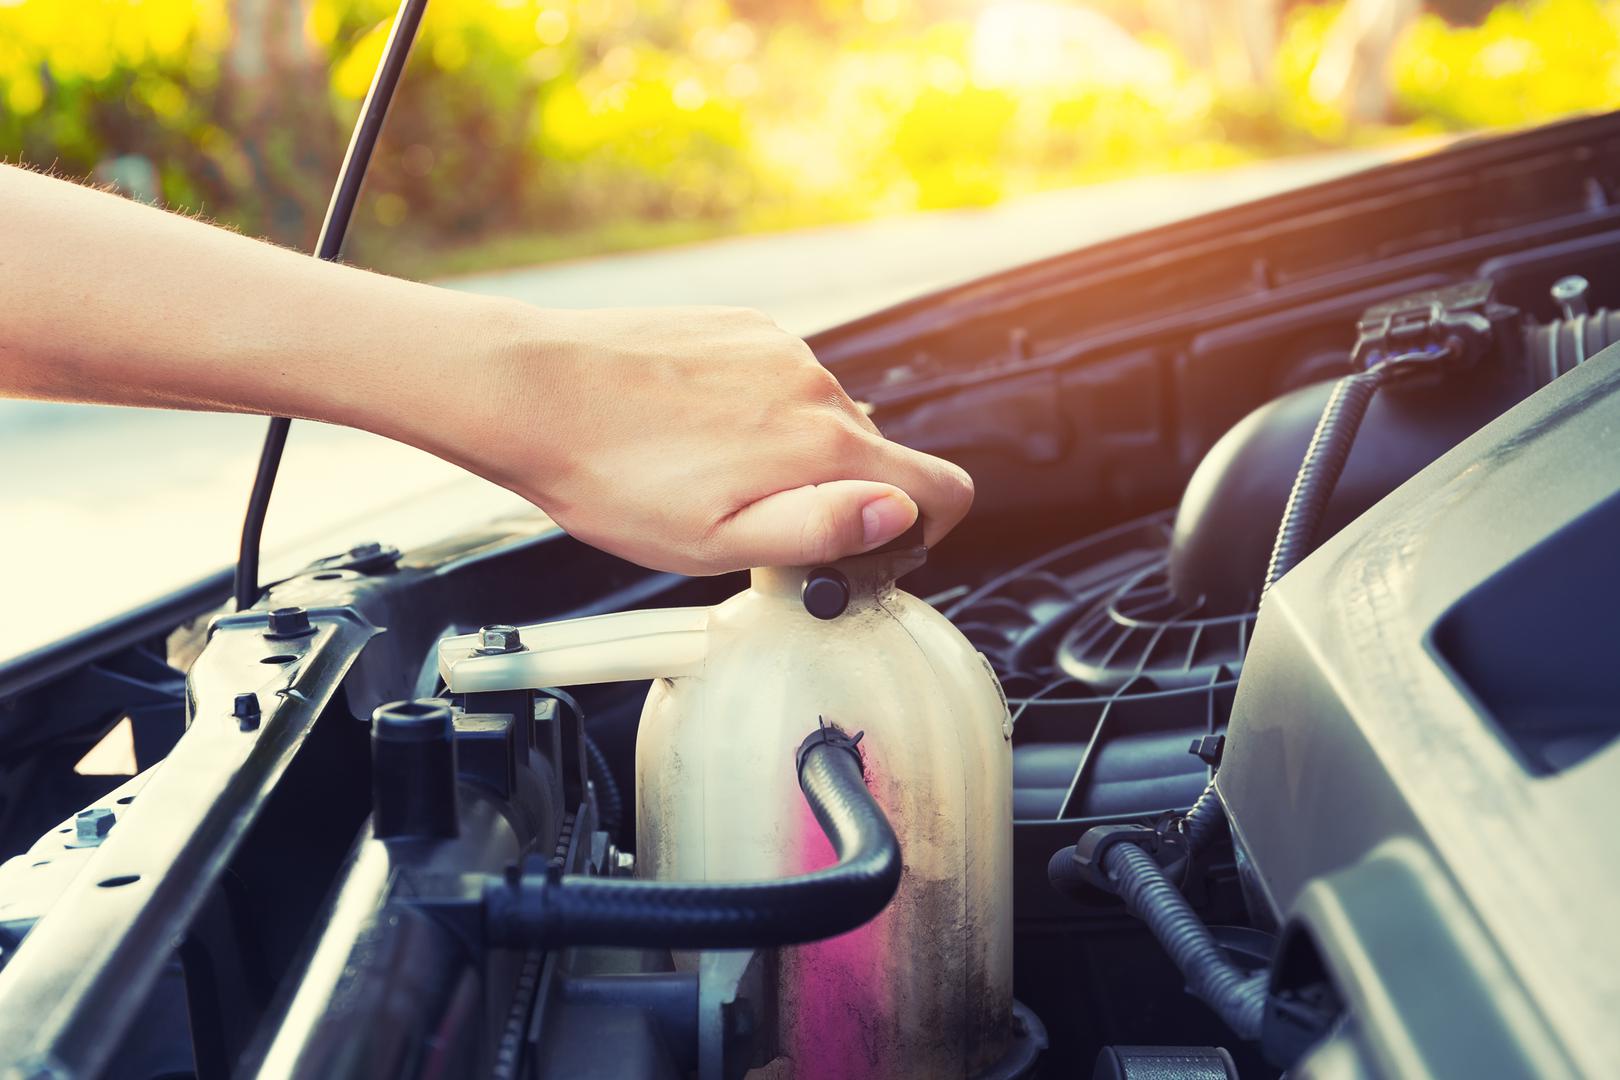 Vodite računa o rashladnoj tekućini: Pazite da vam se automobil ne pregrije prilikom vožnje po najvećim vrućinama. Pobrinite se da imate dovoljno rashladne tekućine. Prilikom provjeravanja ili dopunjavanja budite oprezni i nemojte dirati spremnik dok je još vruć.